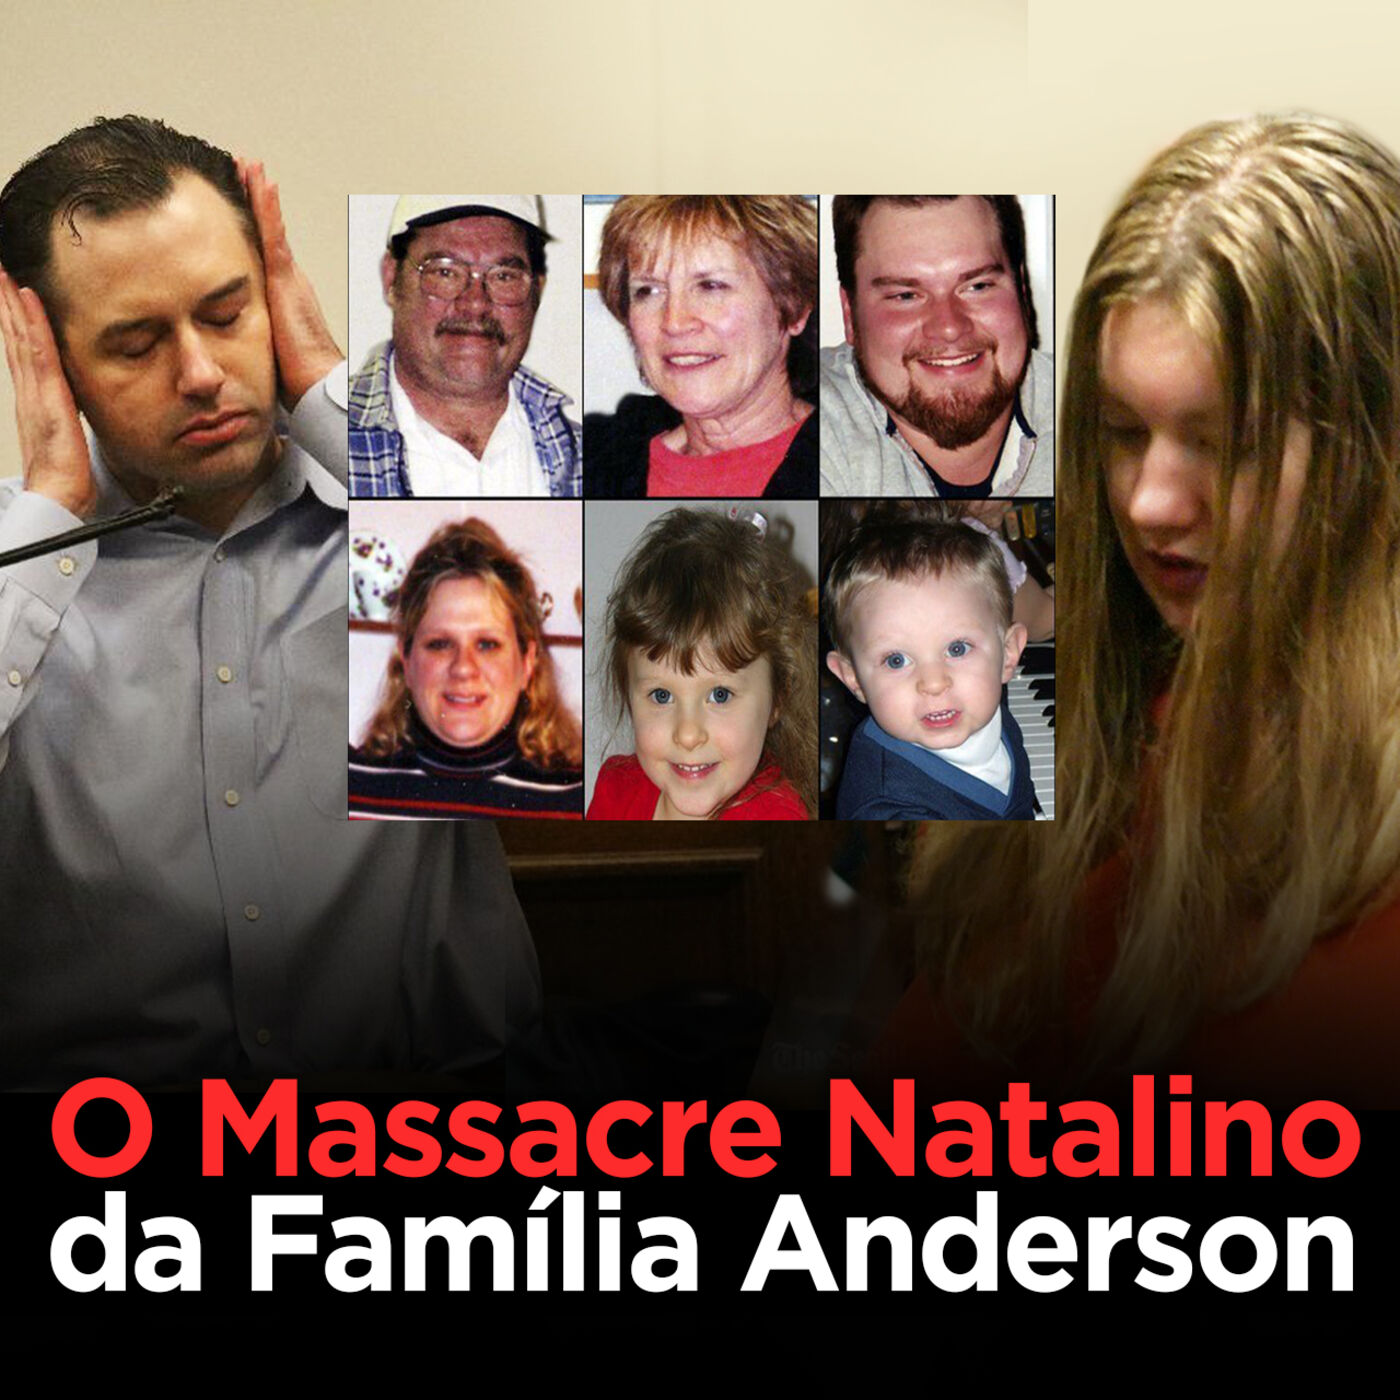 O Massacre Natalino da Familia Anderson